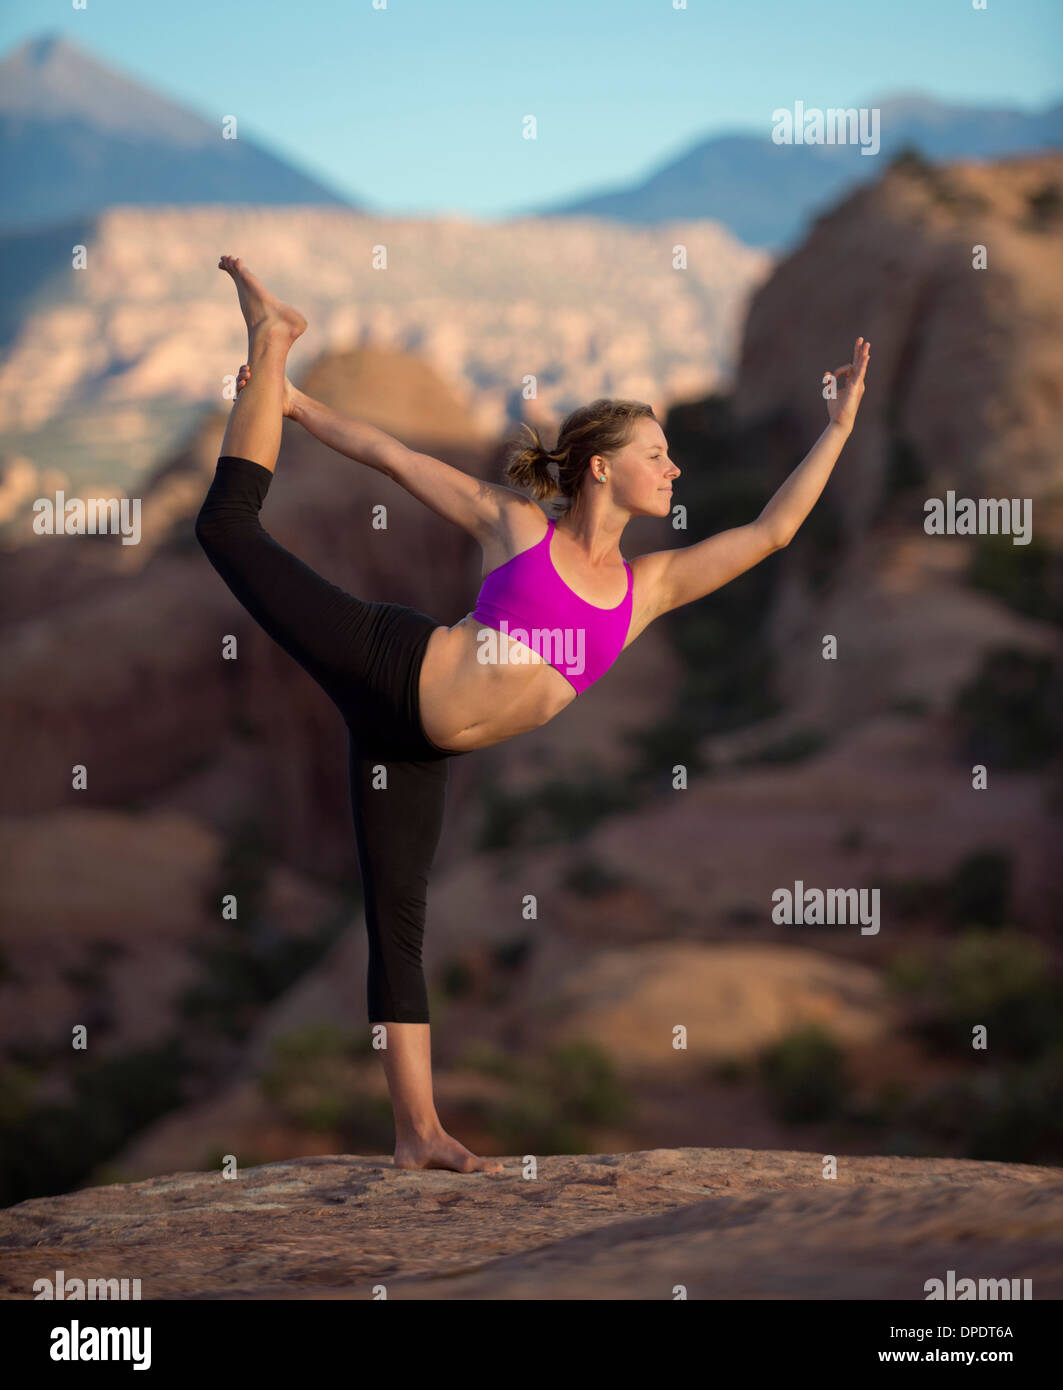 Young woman doing yoga, Moab, Utah, USA Stock Photo